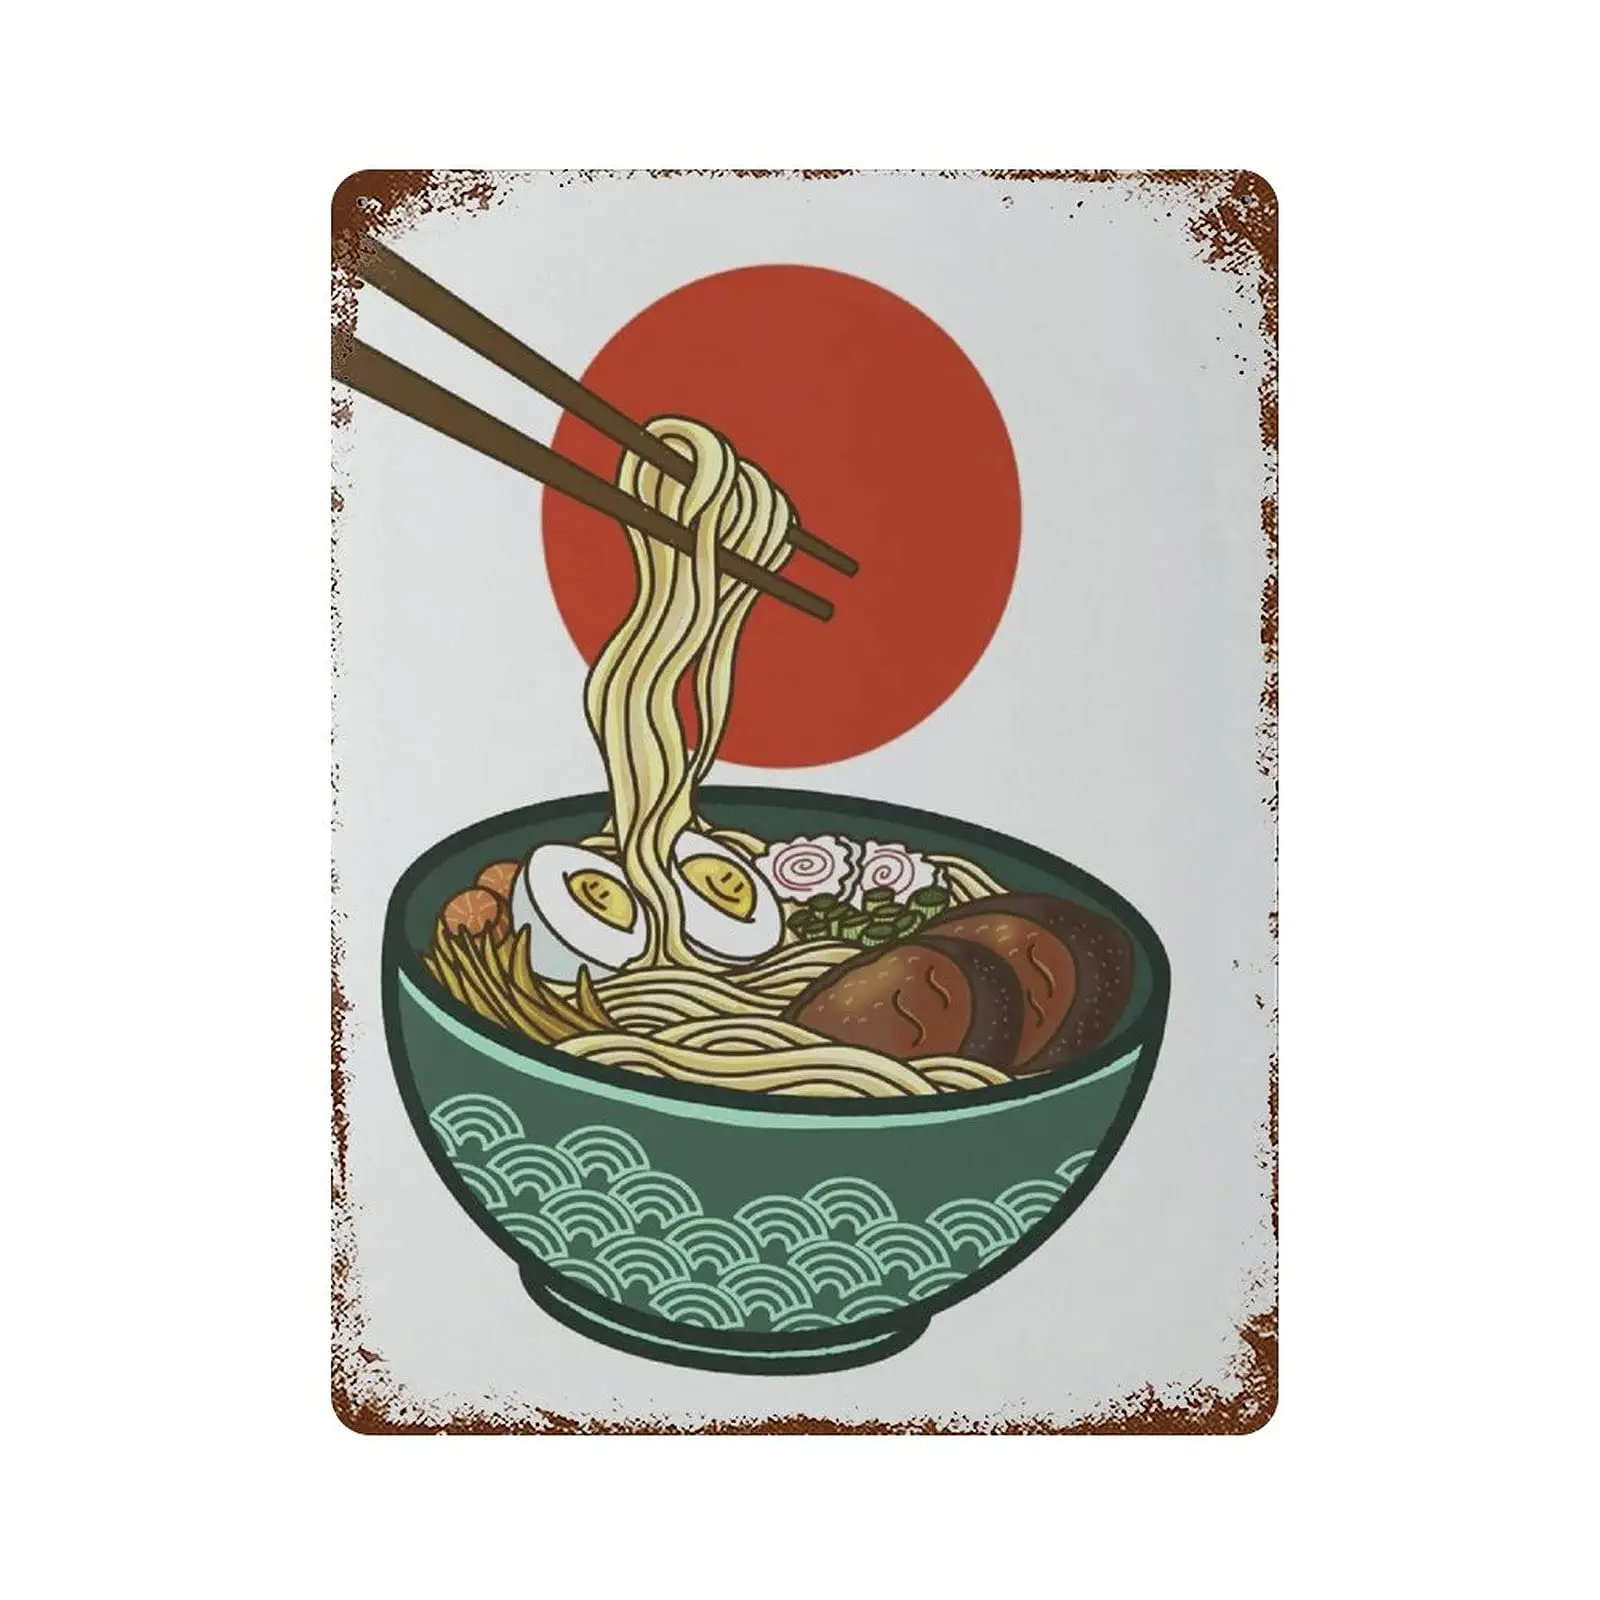 

Металлический жестяной знак Dreacoss, новый постер в ретро стиле, железная живопись, жестяной знак рамен, японская традиционная еда, жестяной знак, японское искусство